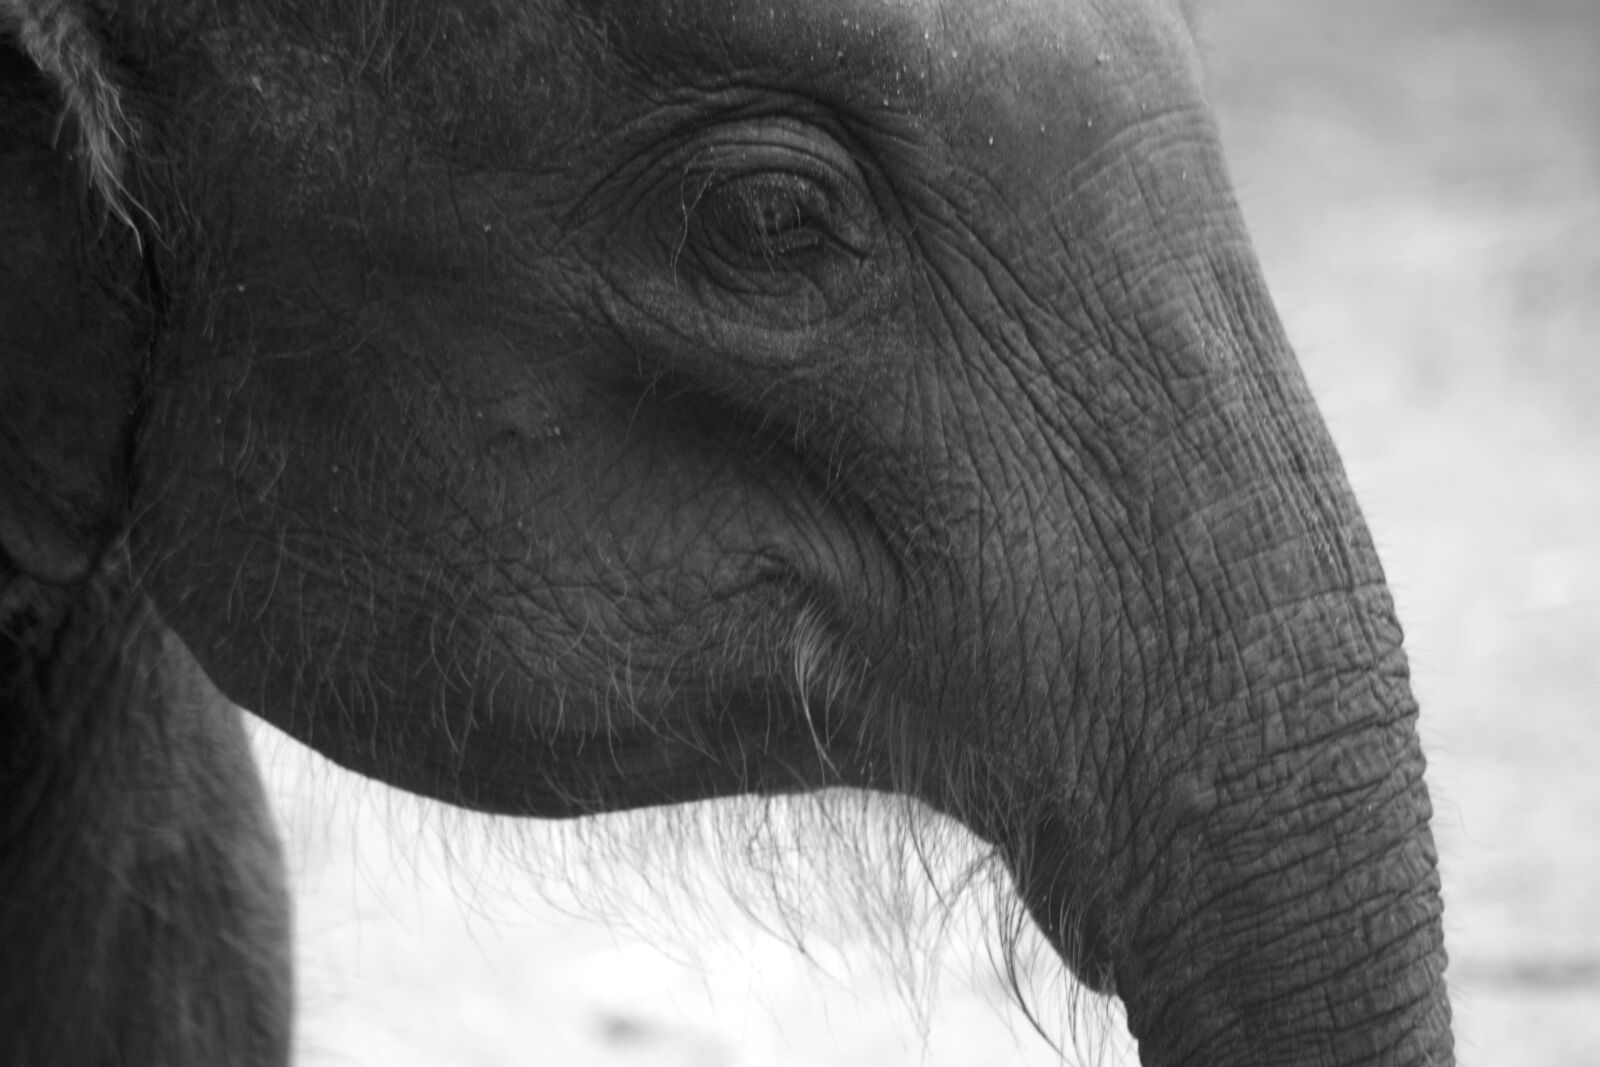 Nikon D800 sample photo. Elephant, vishnu, vasu photography